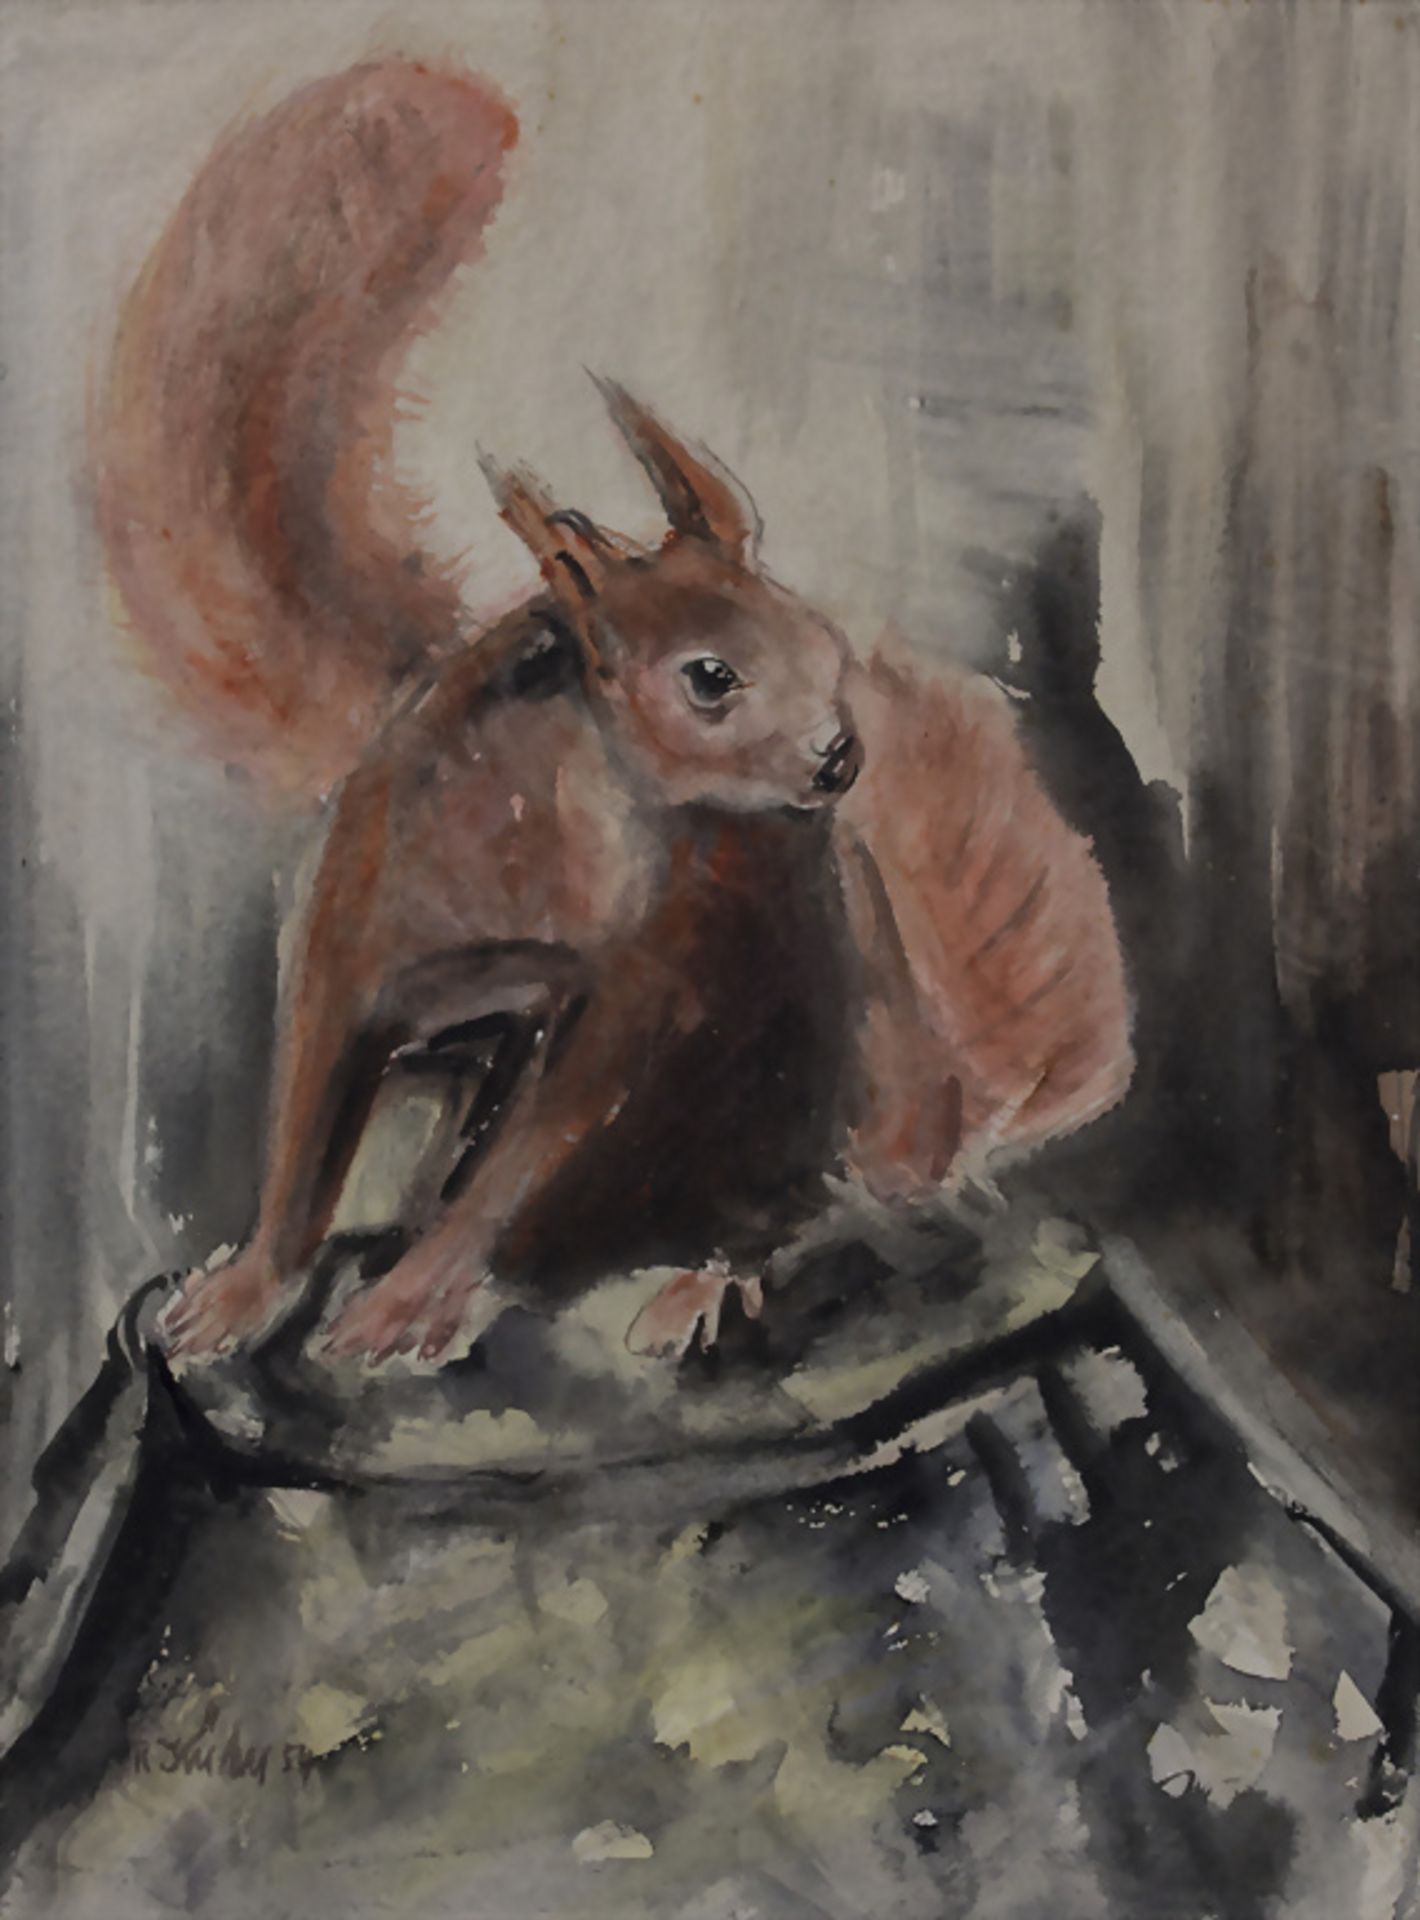 R. Kühn, 'Eichhörnchen' / 'A squirrel', 1954